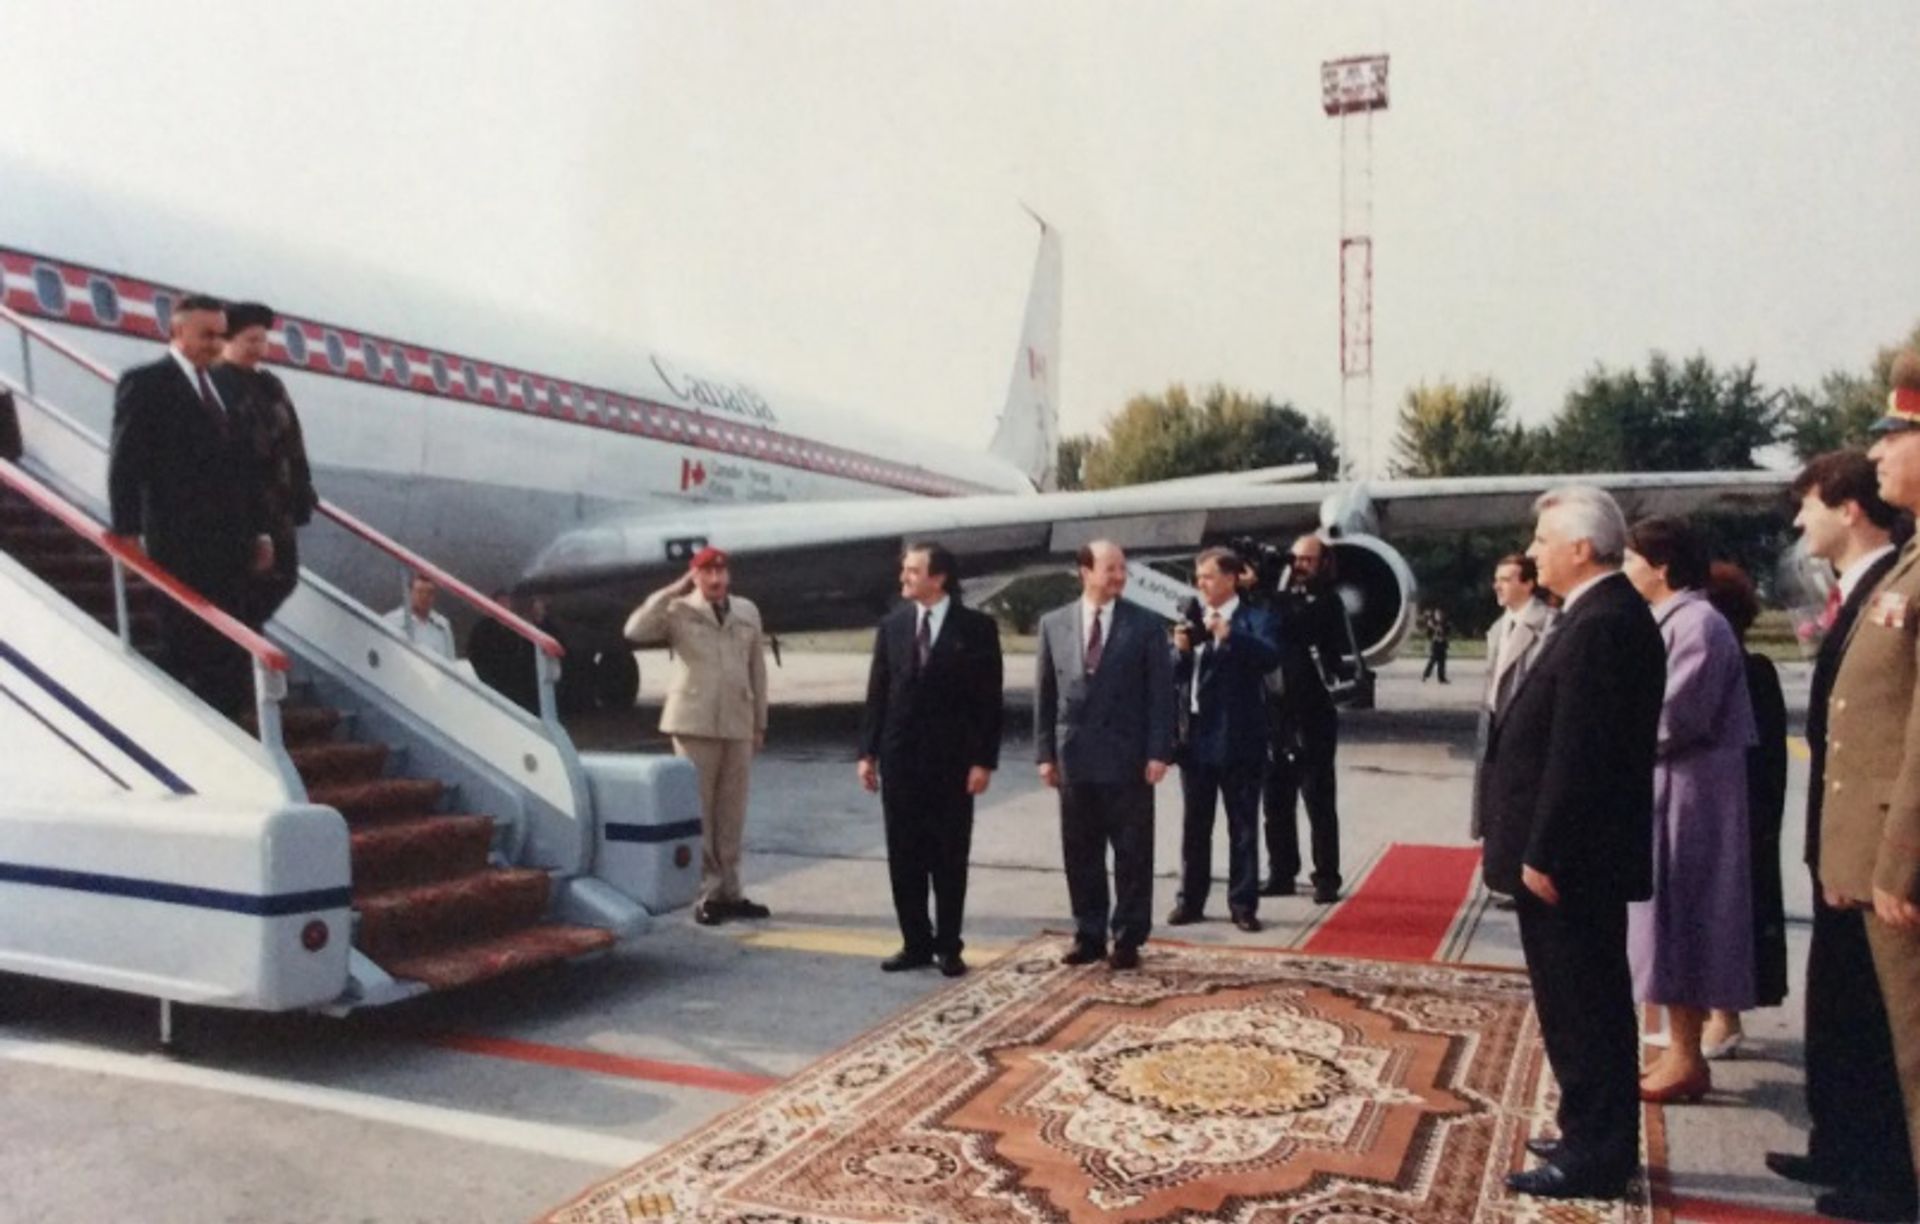 המושל הכללי הקנדי לשעבר ריימונד הנטישין (משמאל) הגיע לאוקראינה במהלך ביקור ממלכתי ב-1992

באדיבות קרן הנטישין